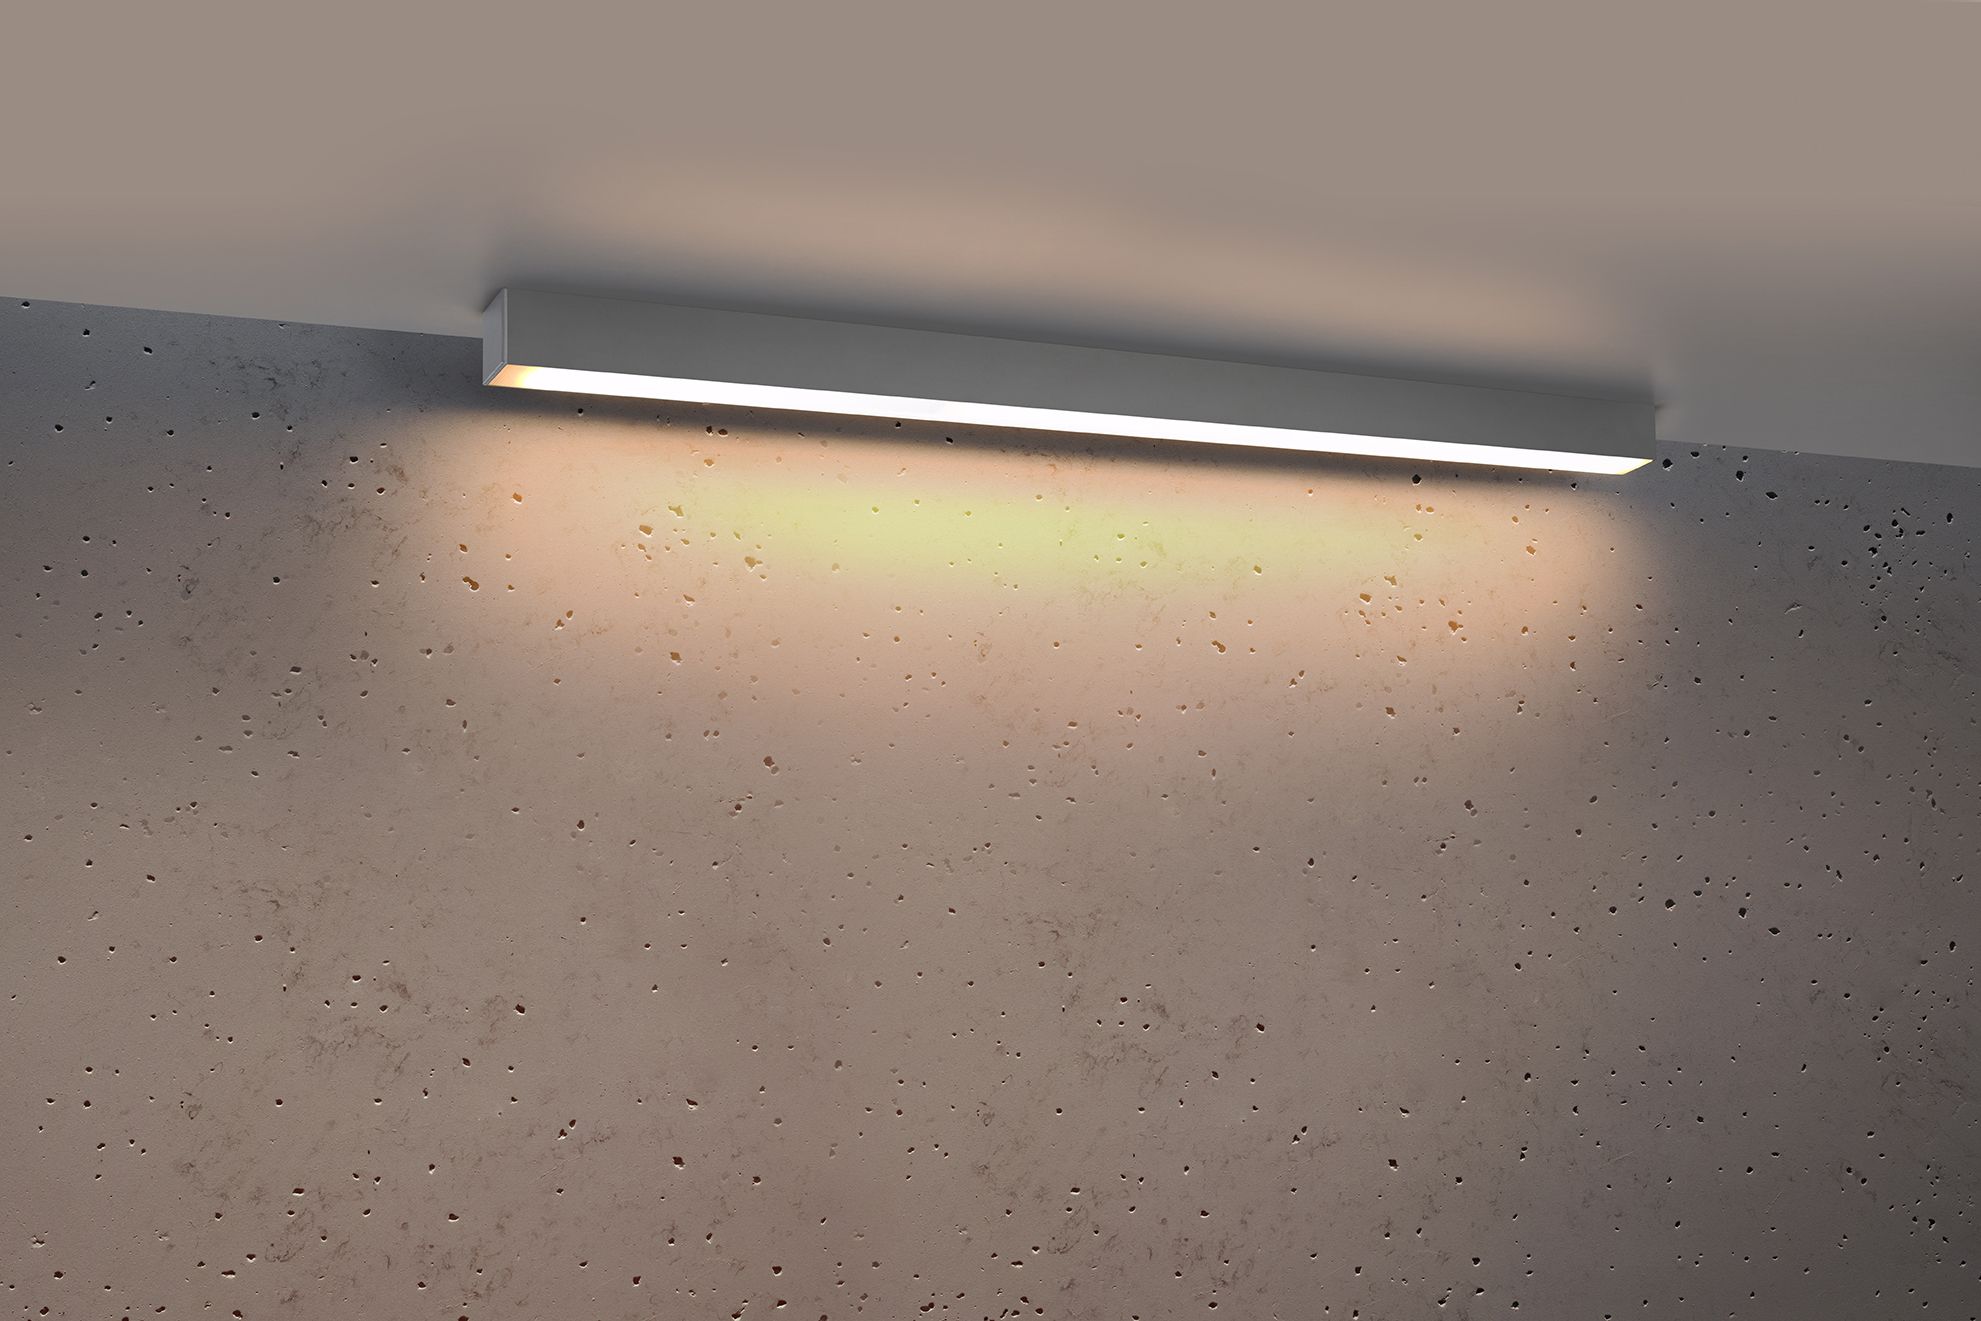 LED Deckenleuchte Grau 90 cm H: 6 cm flach blendarm